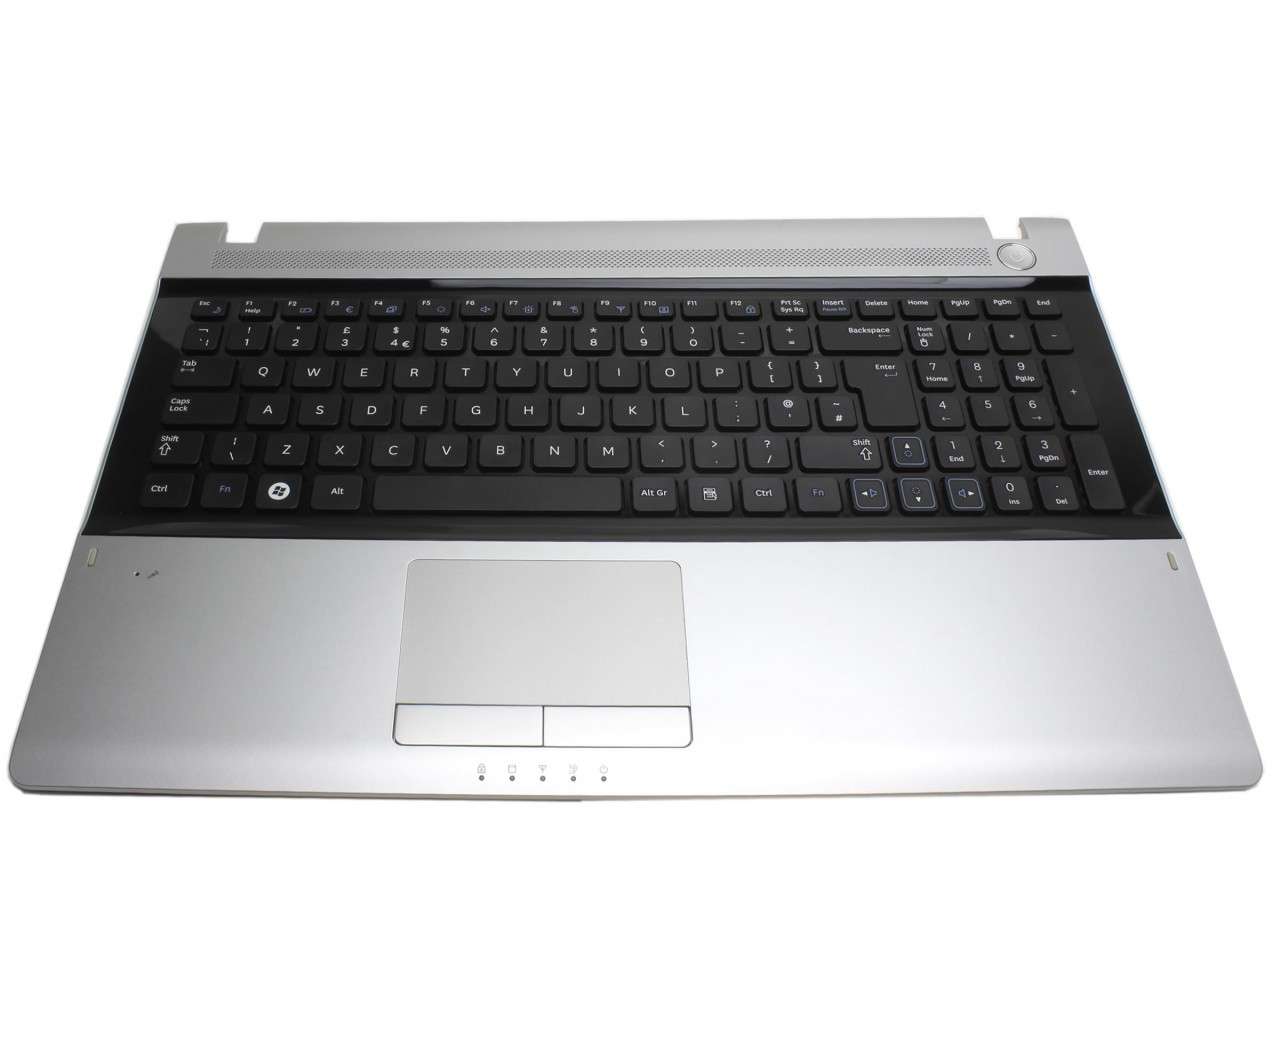 Tastatura Samsung RV520 neagra cu Palmrest argintiu